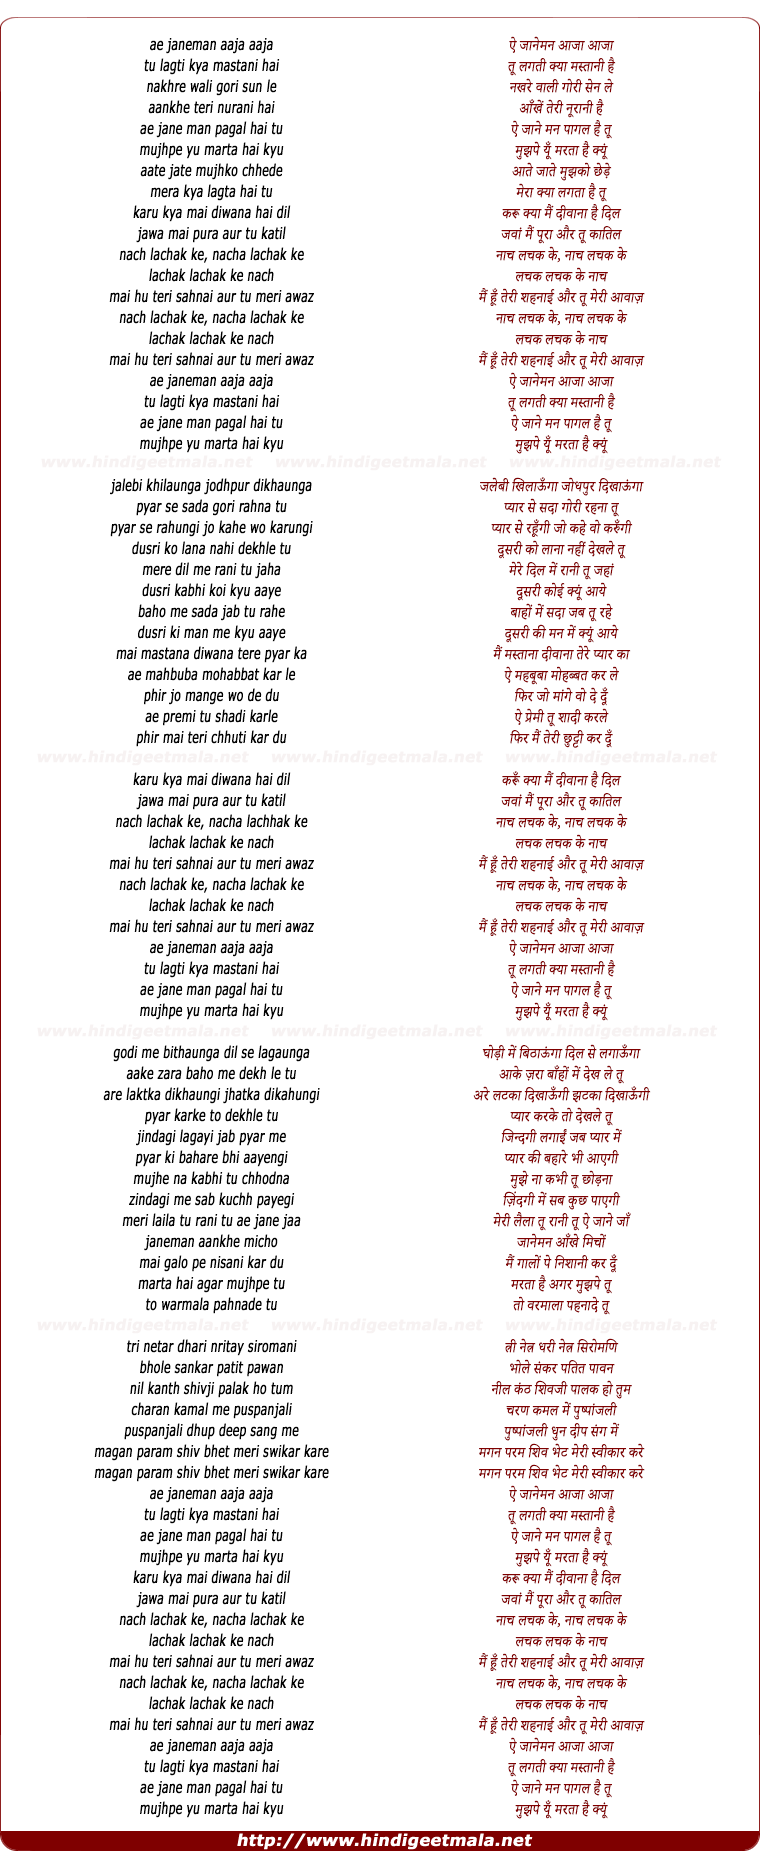 lyrics of song Nach Lachak Ke Nach Lachak Ke